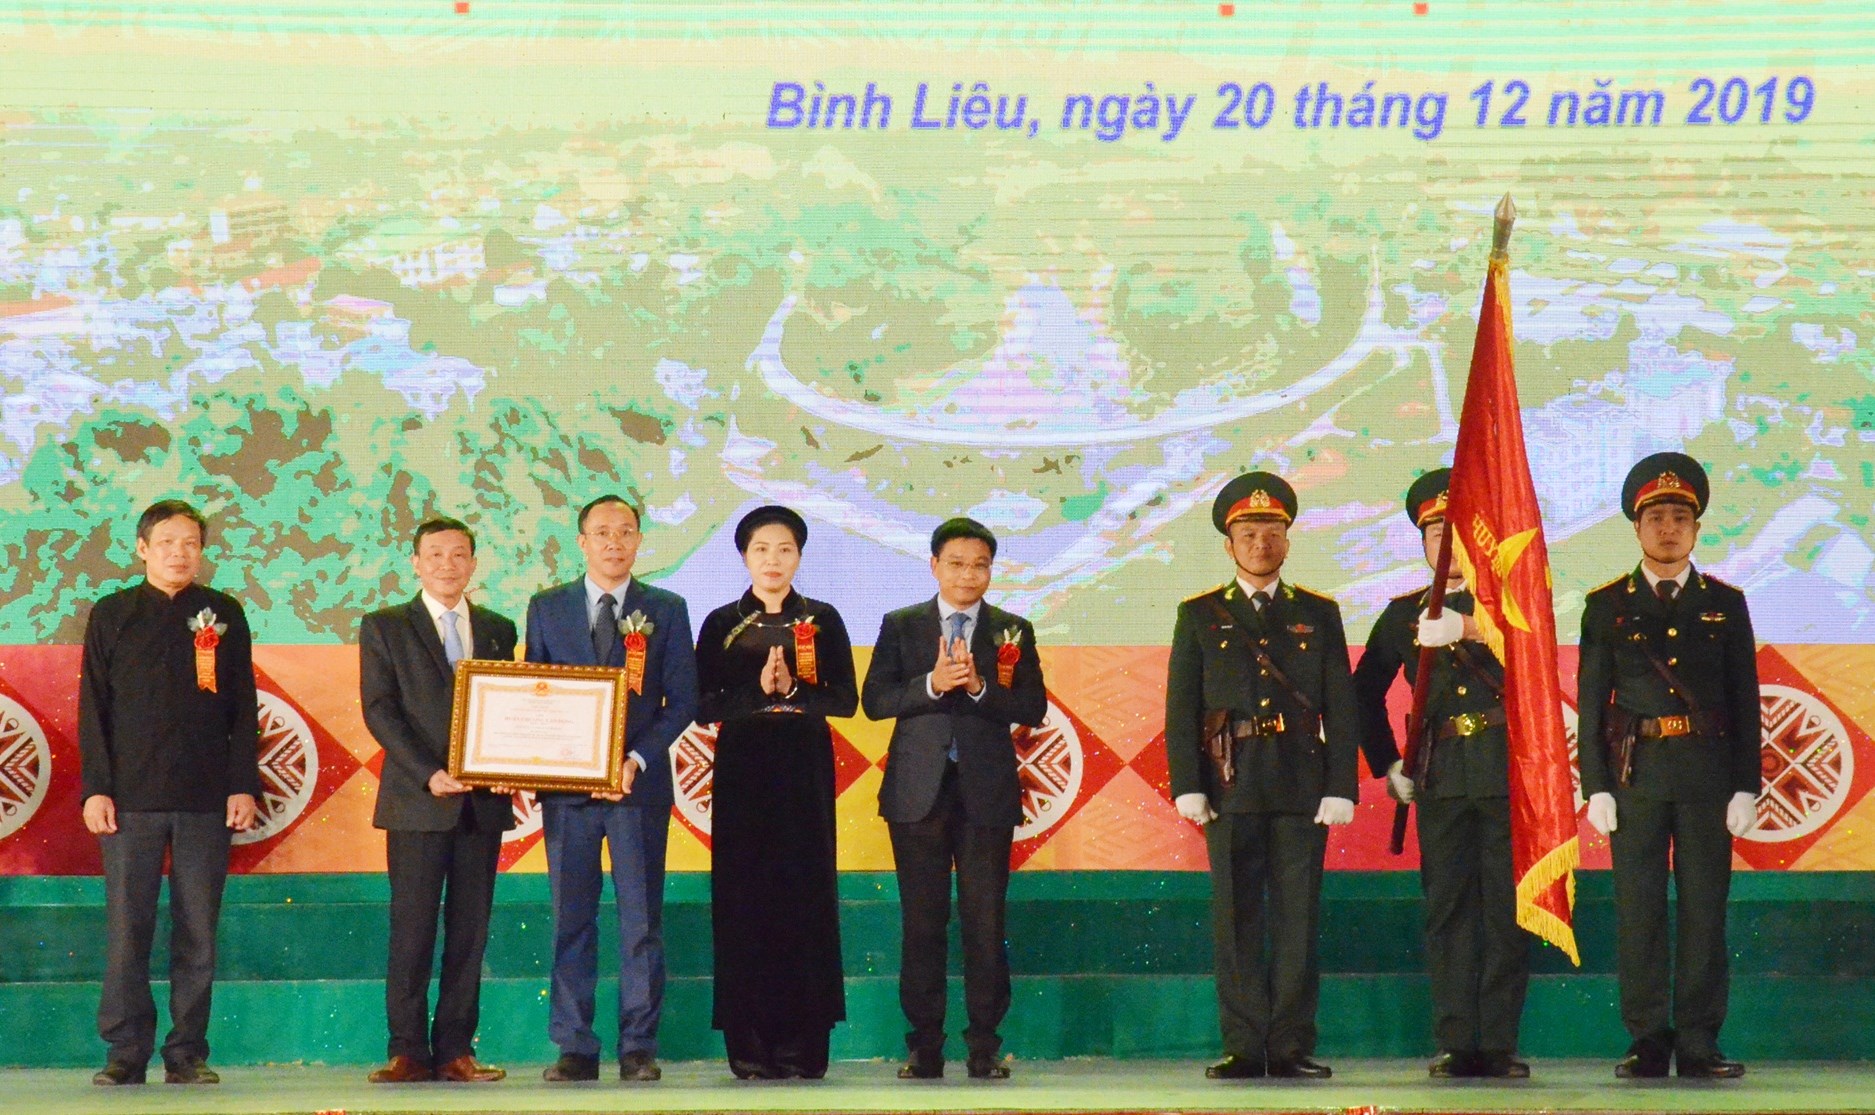 Chủ tịch UBND tỉnh Quảng Ninh (thứ 4 từ phải sang trái) trao Huân Chương Lao động hạng Nhất cho Lãnh đạo huyện Bình Liêu